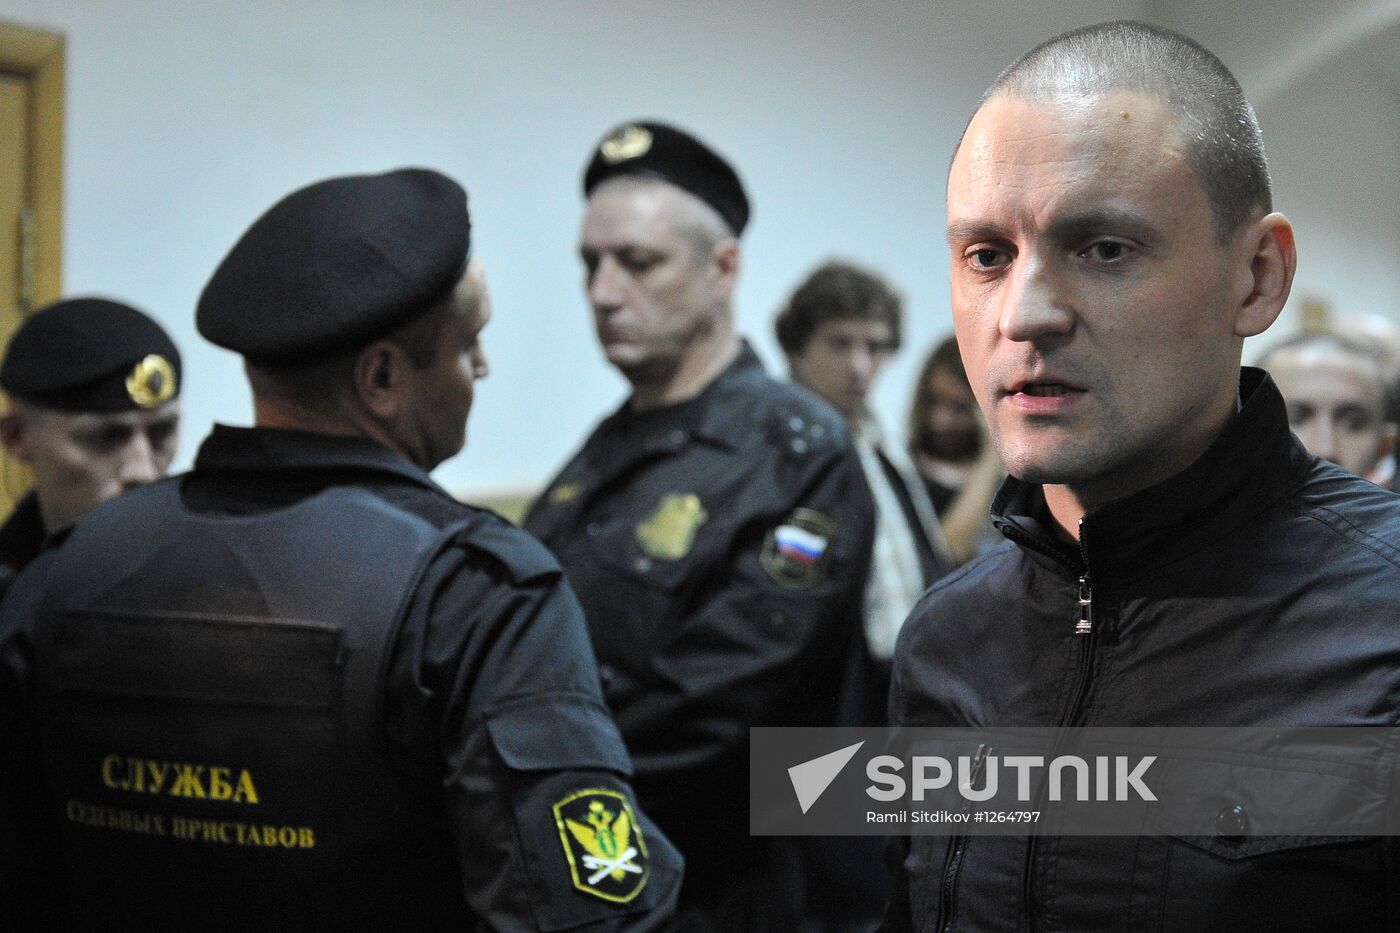 Court arrests assistant of S. Udaltsov Konstantin Lebedev